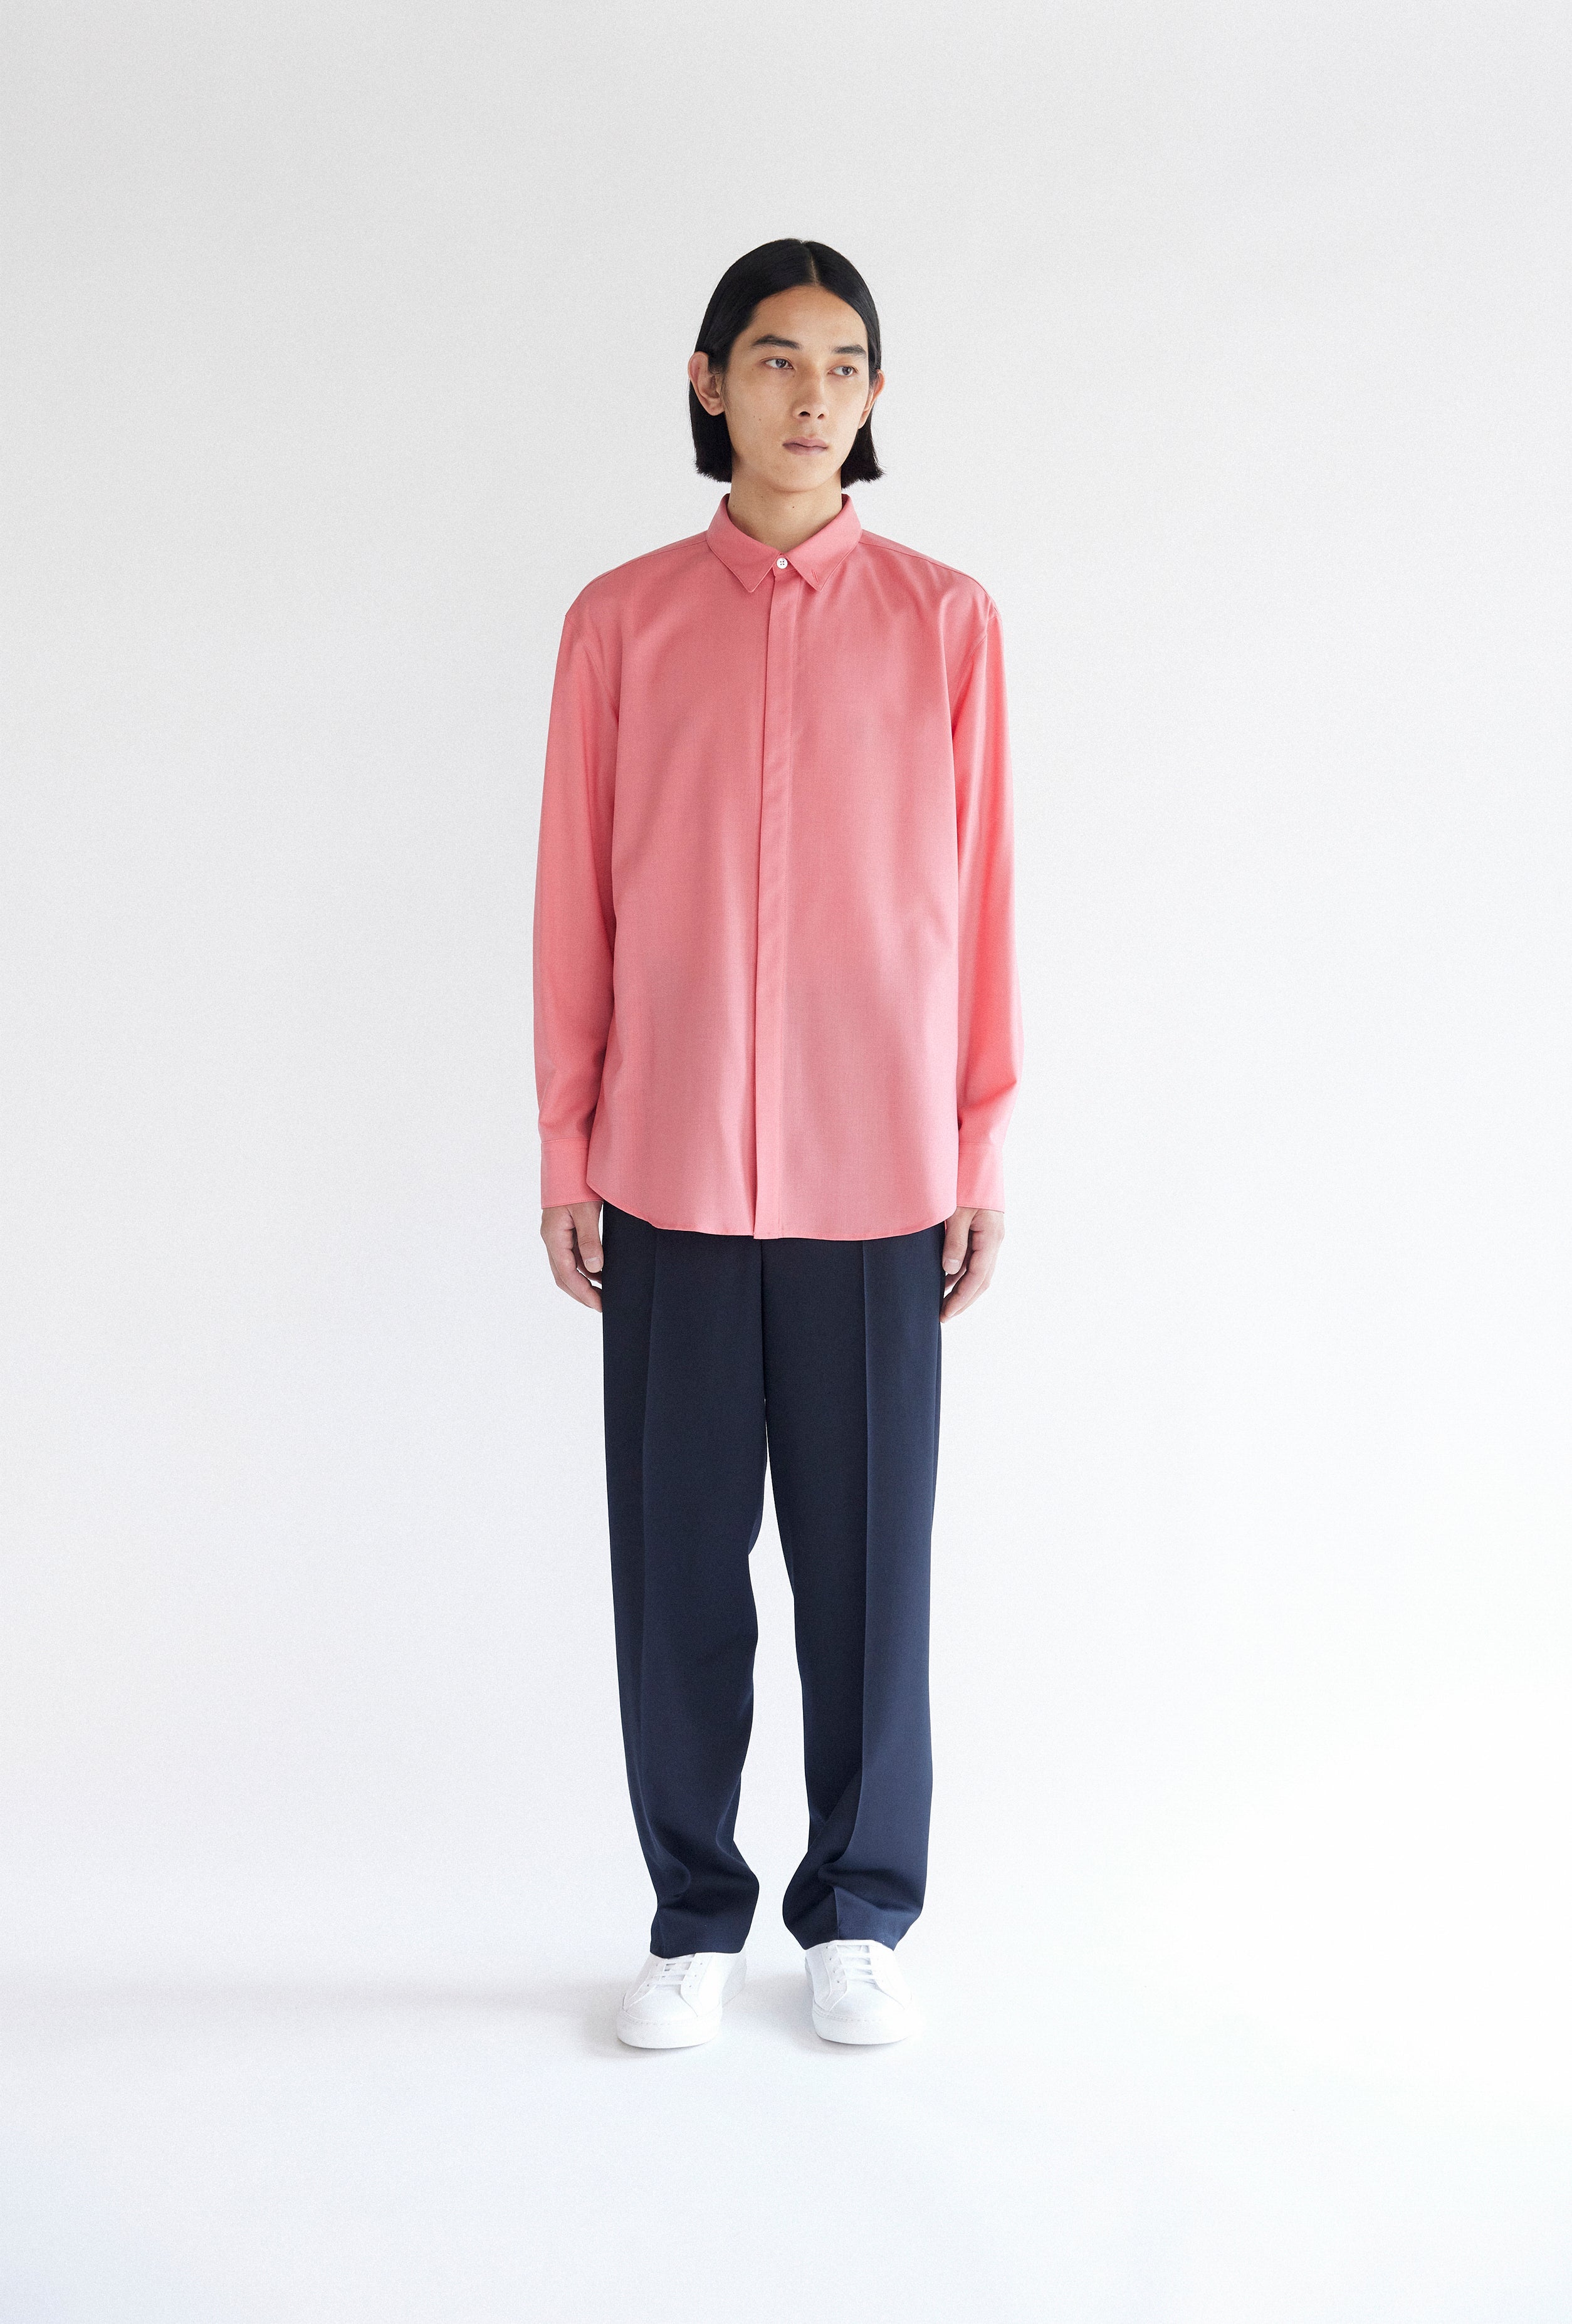 9,900円OVERCOAT Wool Shirt (Purple) size 2